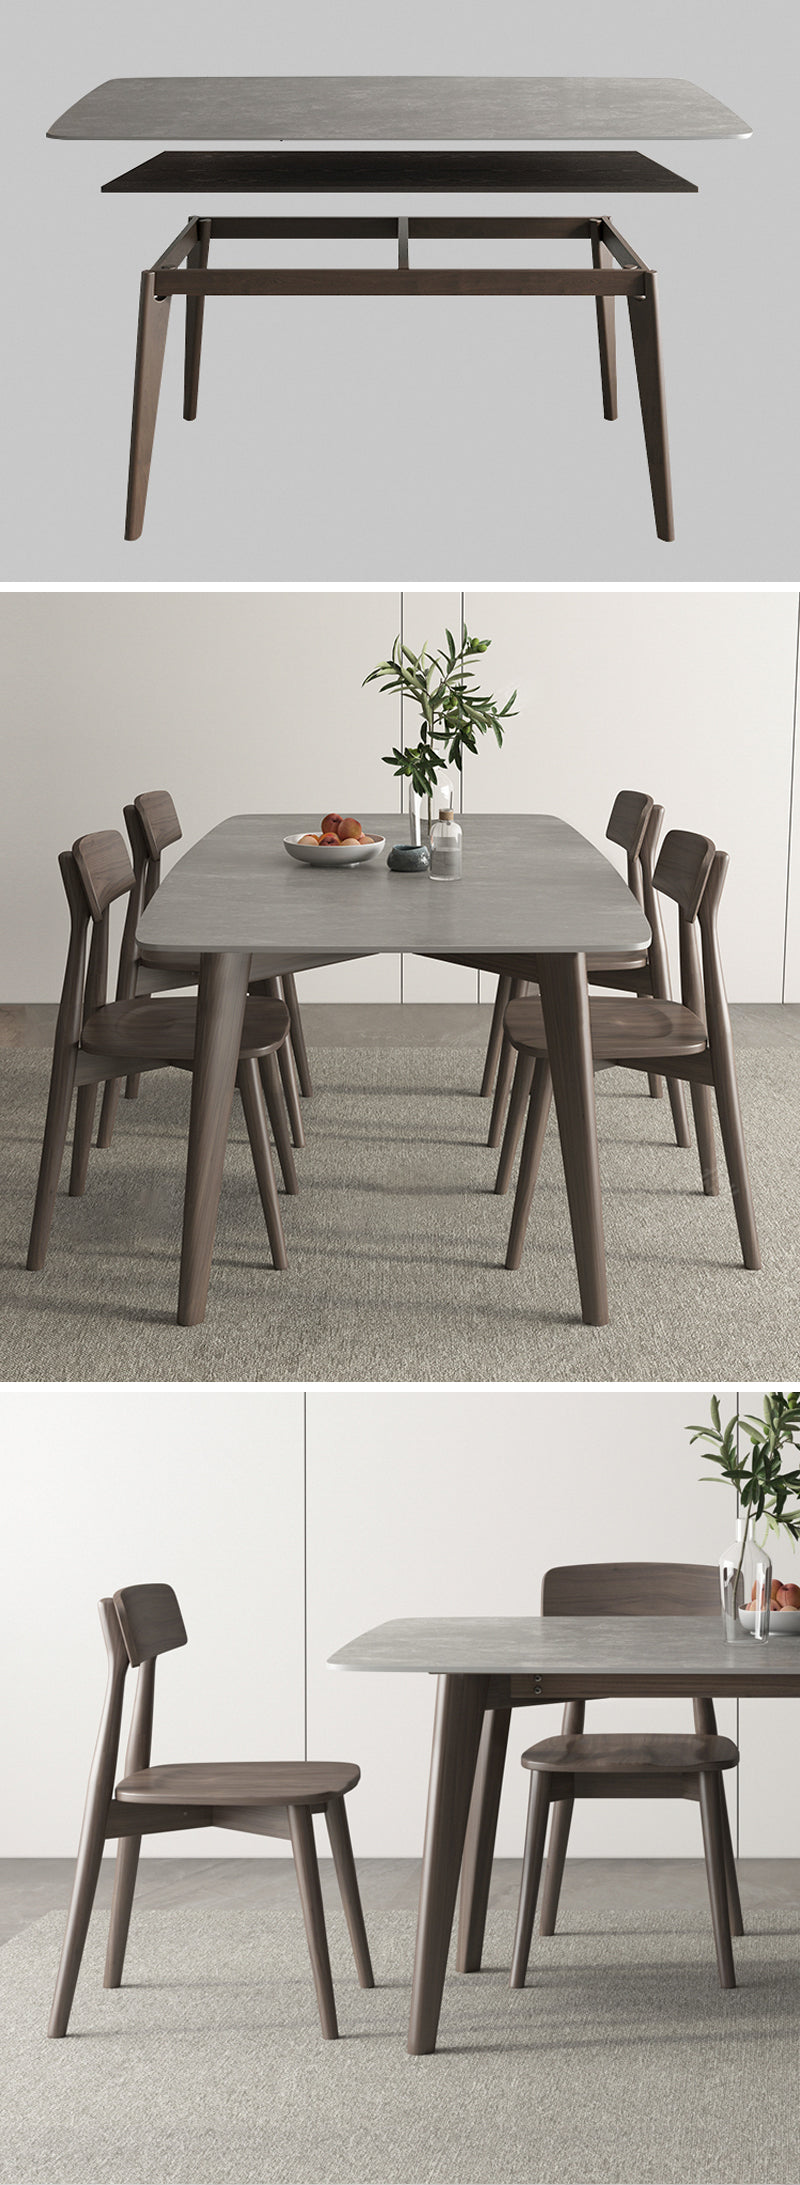 【ダイニングテーブル】北欧風 マーブル柄 選べる7サイズ ダイニングテーブル 椅子セット